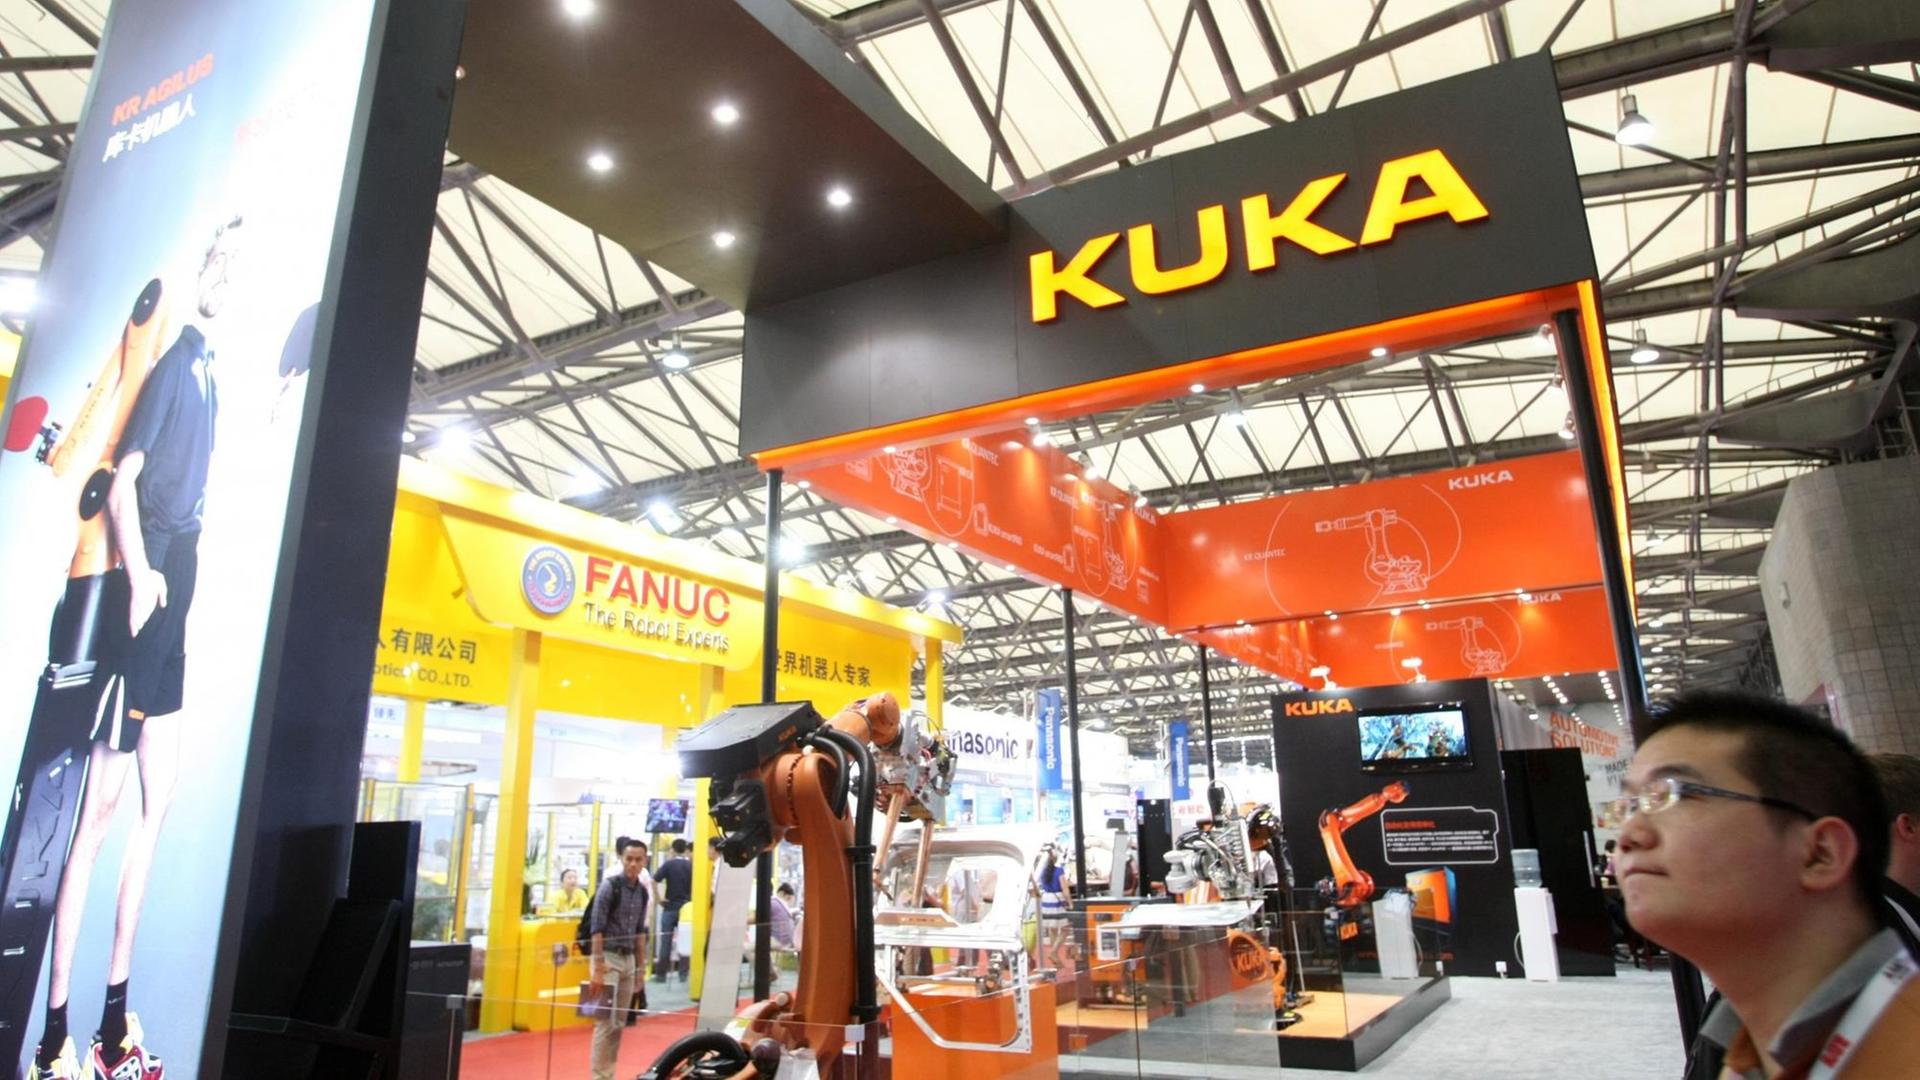 Der Stand des deutschen Roboterherstellers Kuka auf der Technologiemesse in Schanghai im August 2014.